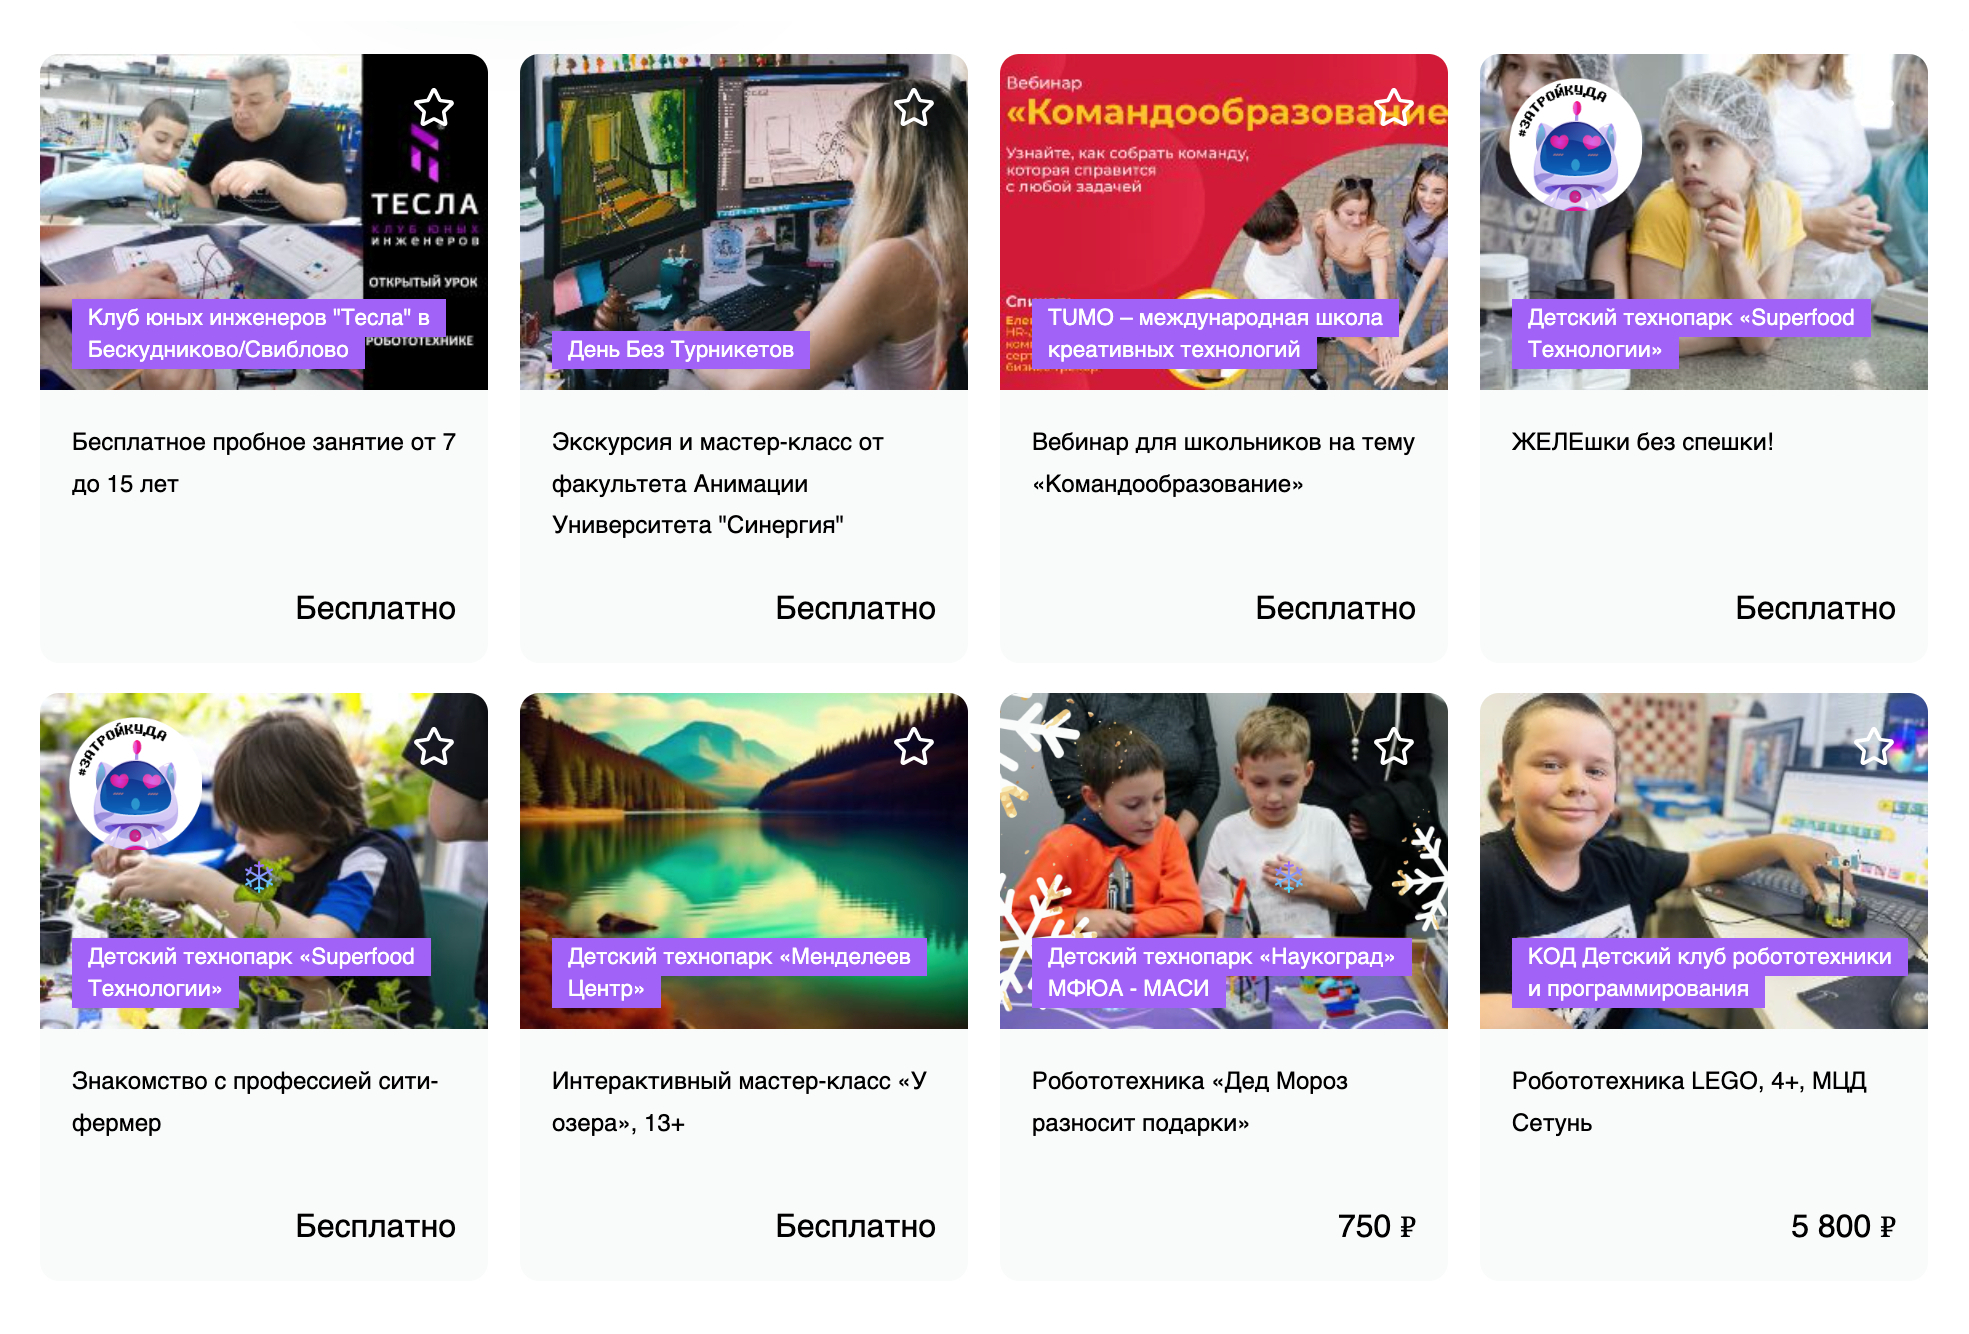 В афише сервиса можно найти много бесплатных мастер-классов. Источник: technopark-kids.ru